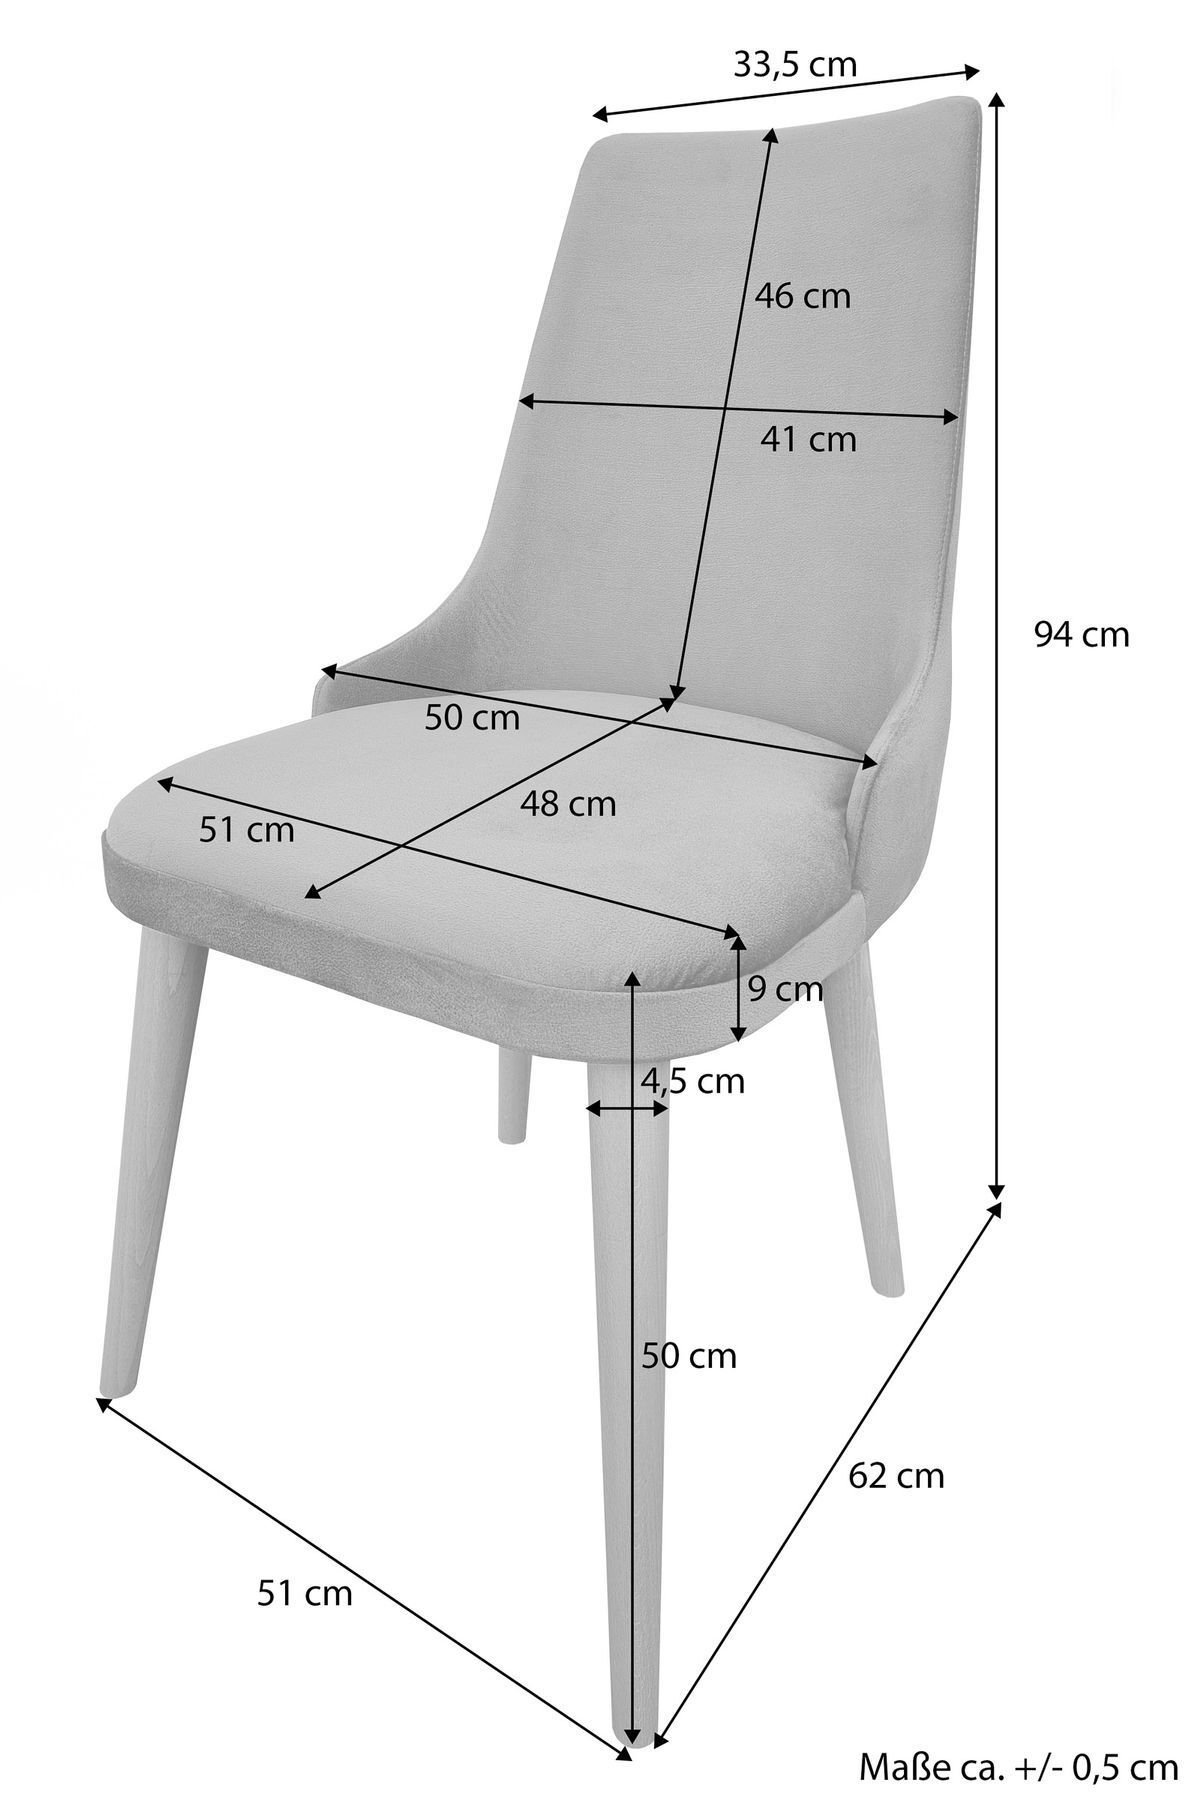 Due varianti di sedia imbottita Poltrona come sedia da scrivania o sedia da pranzo V-90.72B-73